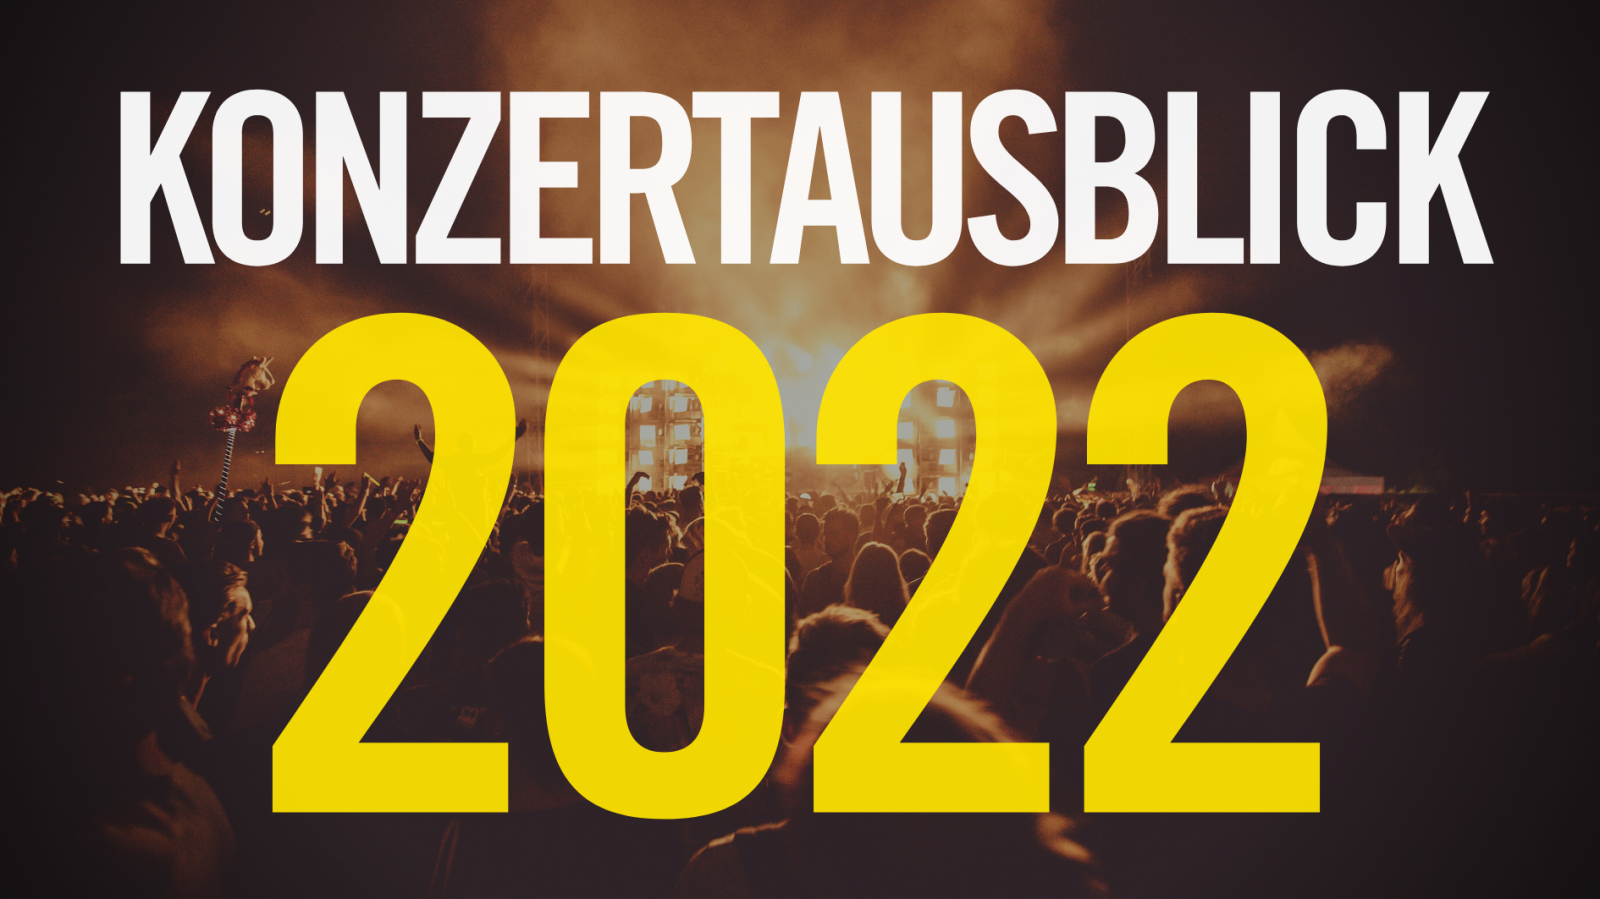 Konzertausblick für 2022